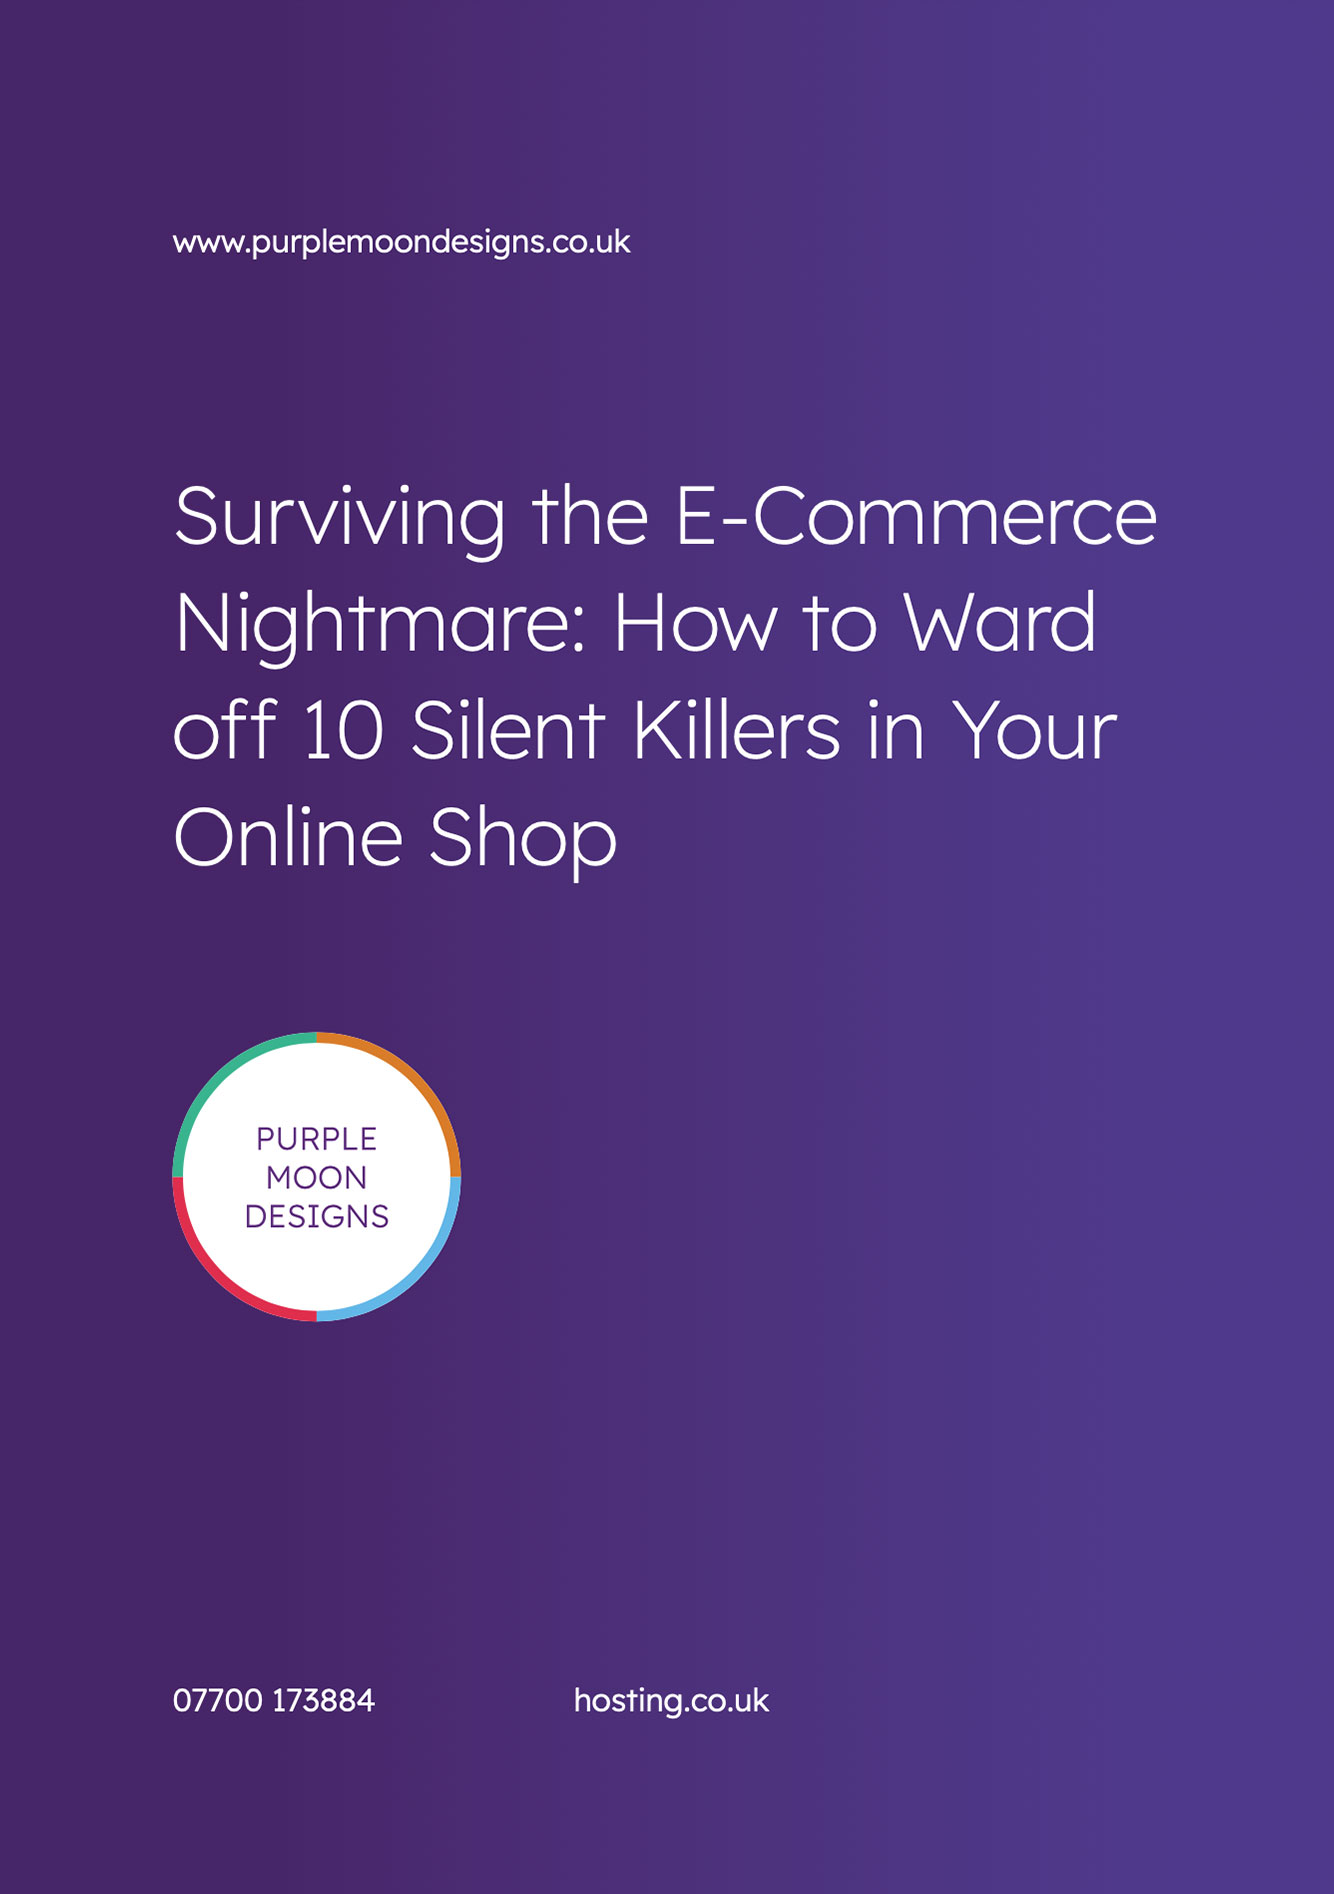 e-commerce tips guide